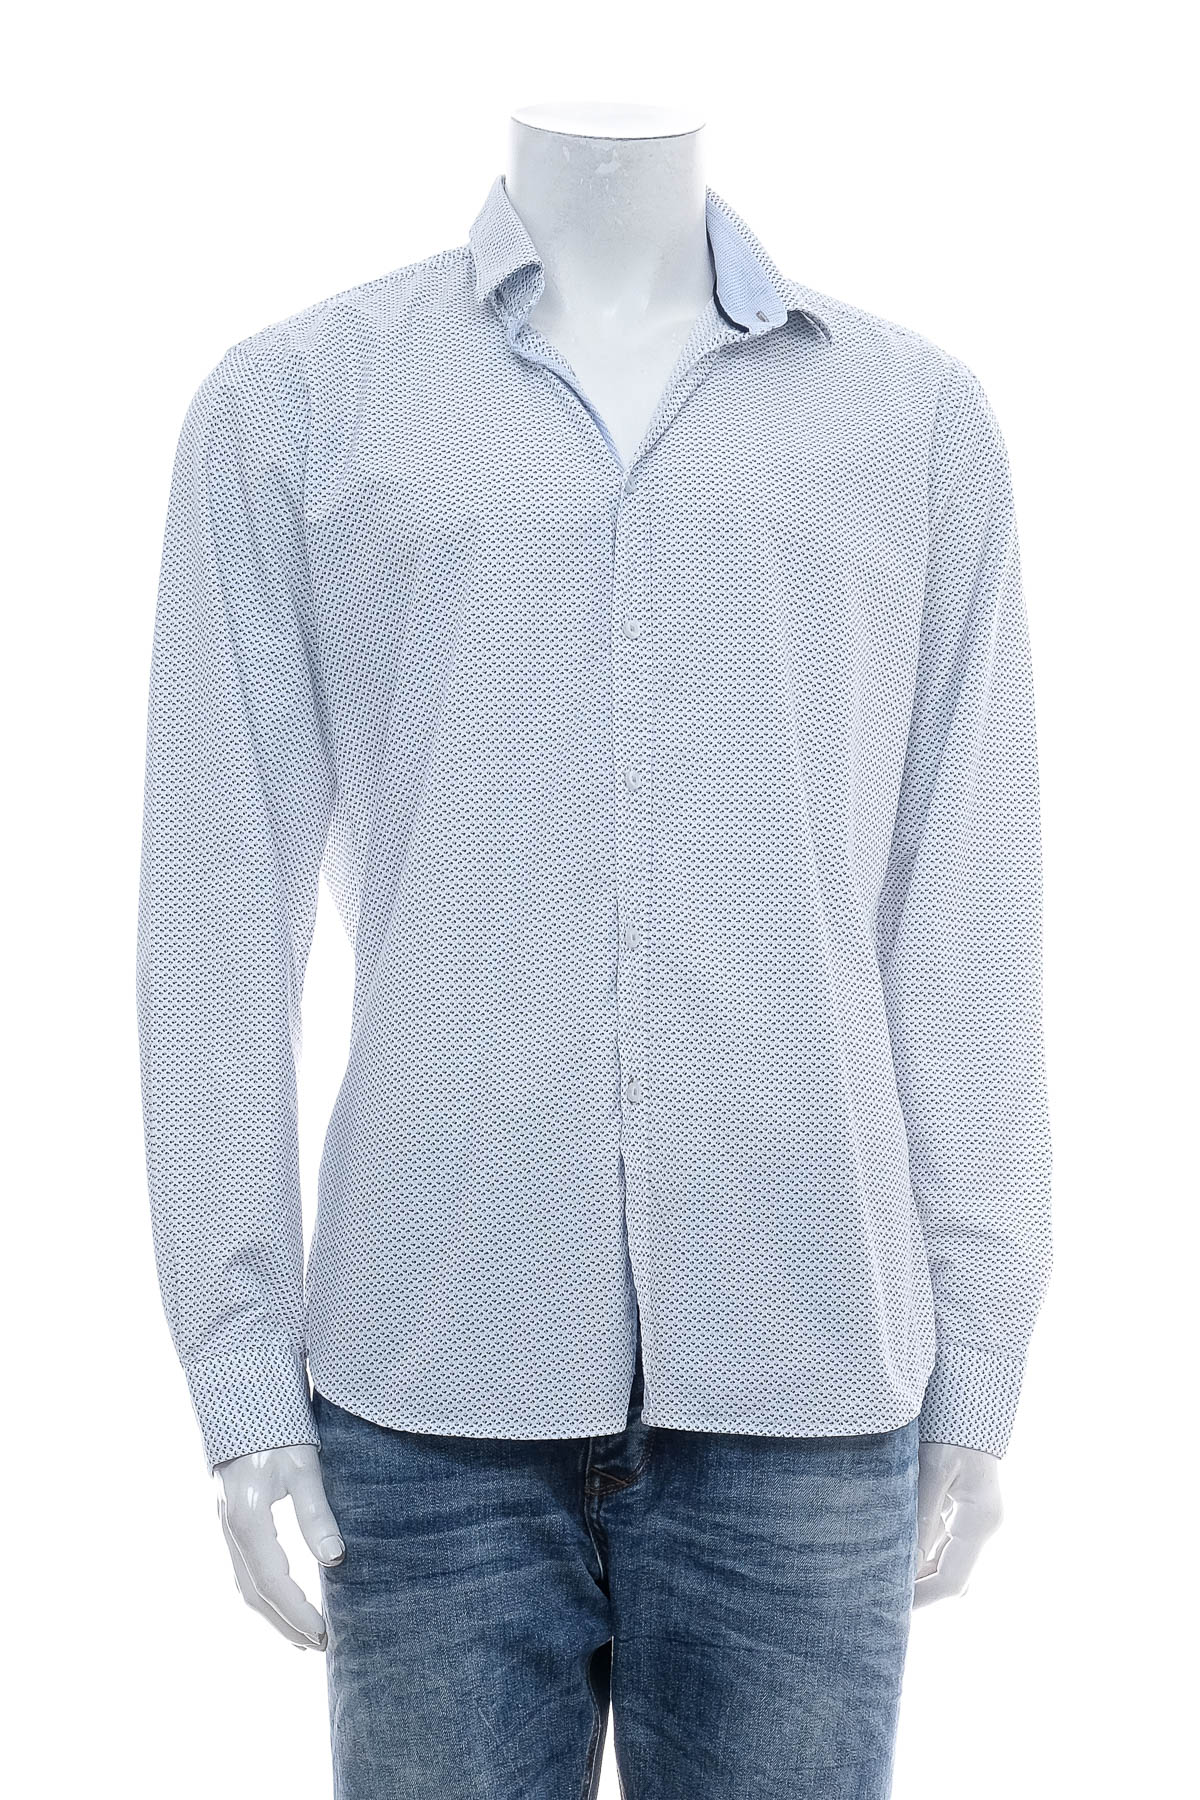 Ανδρικό πουκάμισο - Paul Hunter - 0